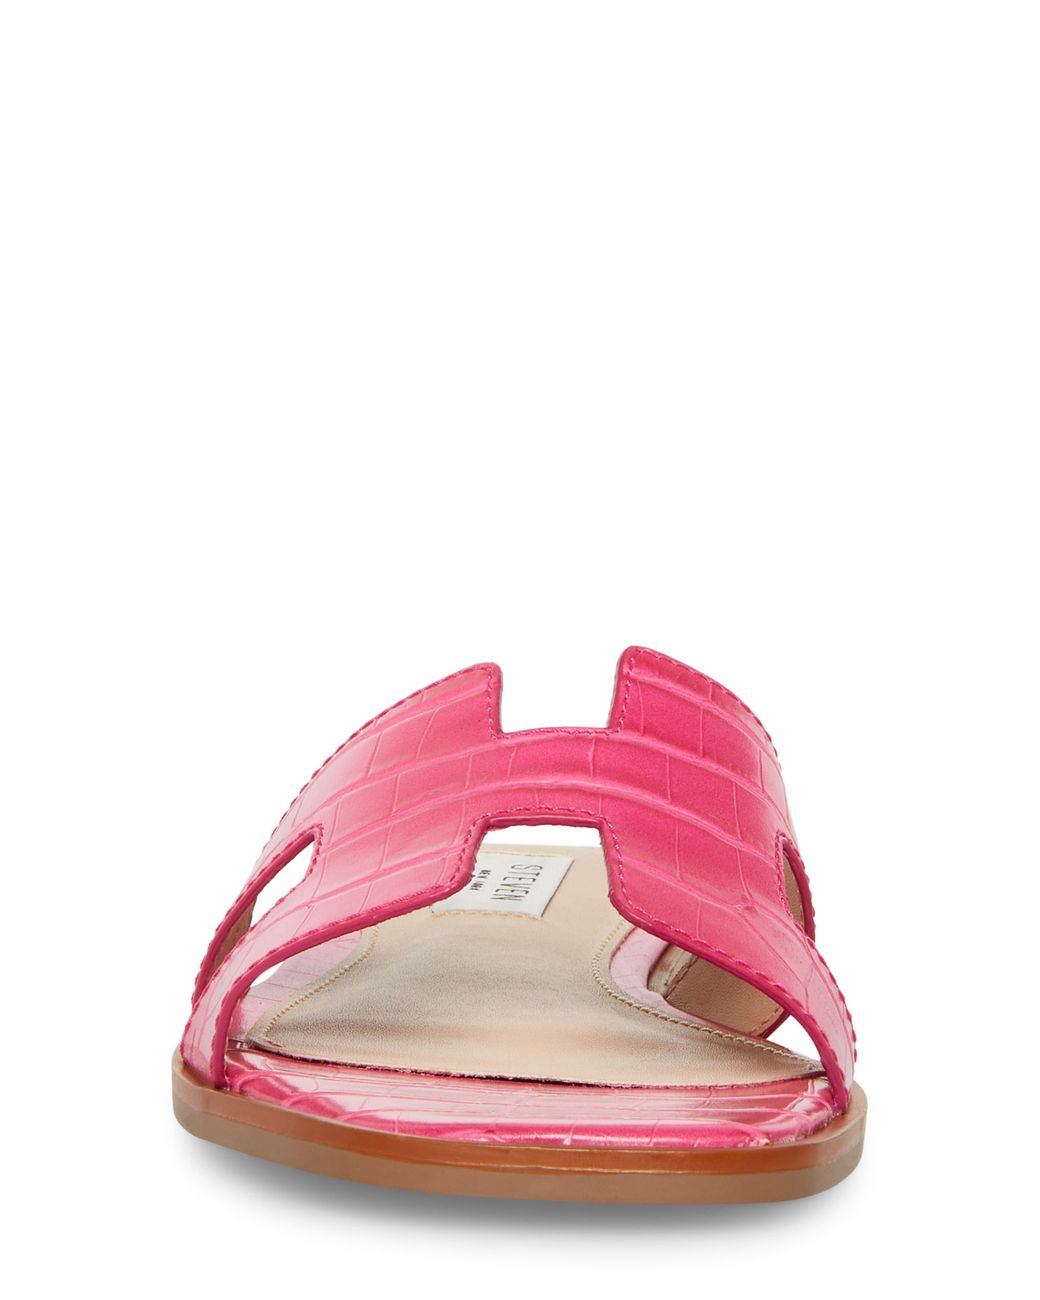 Steven New York Harlien Croc Embossed Slide Sandal in Pink | Lyst